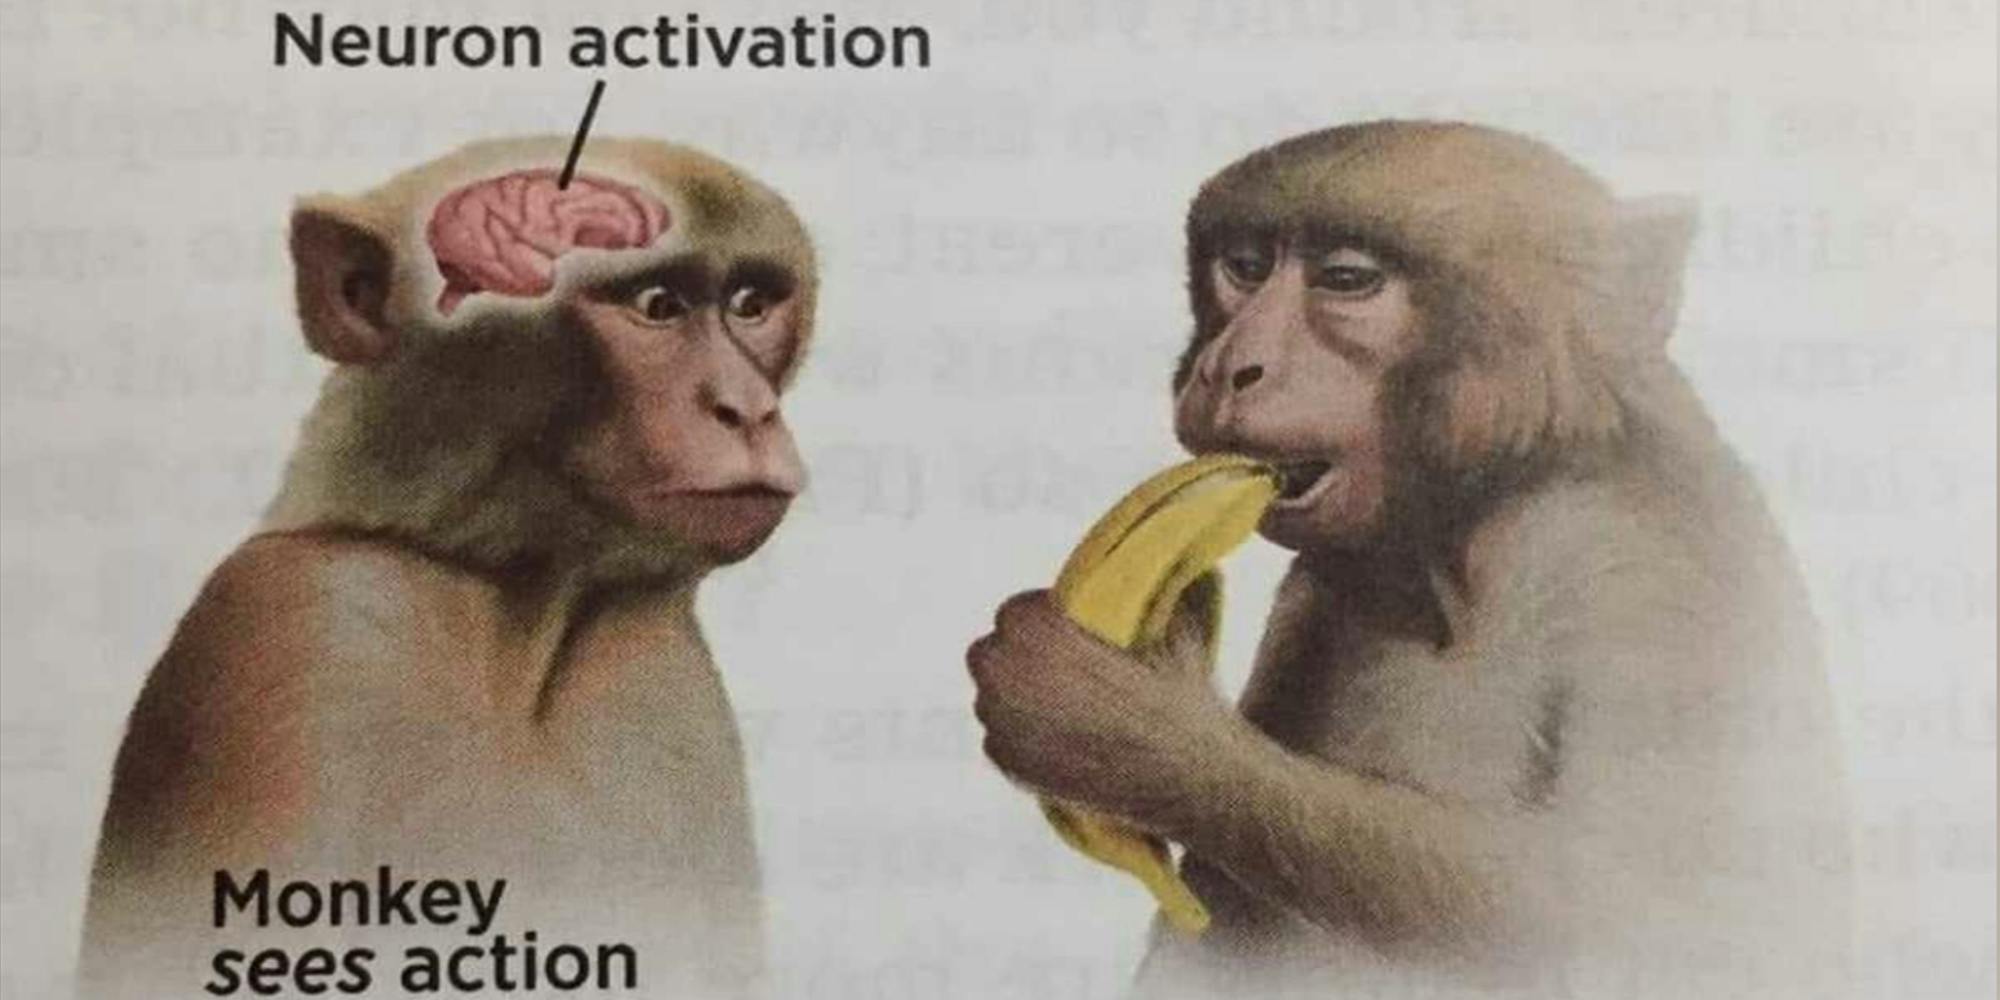 neuron activation meme